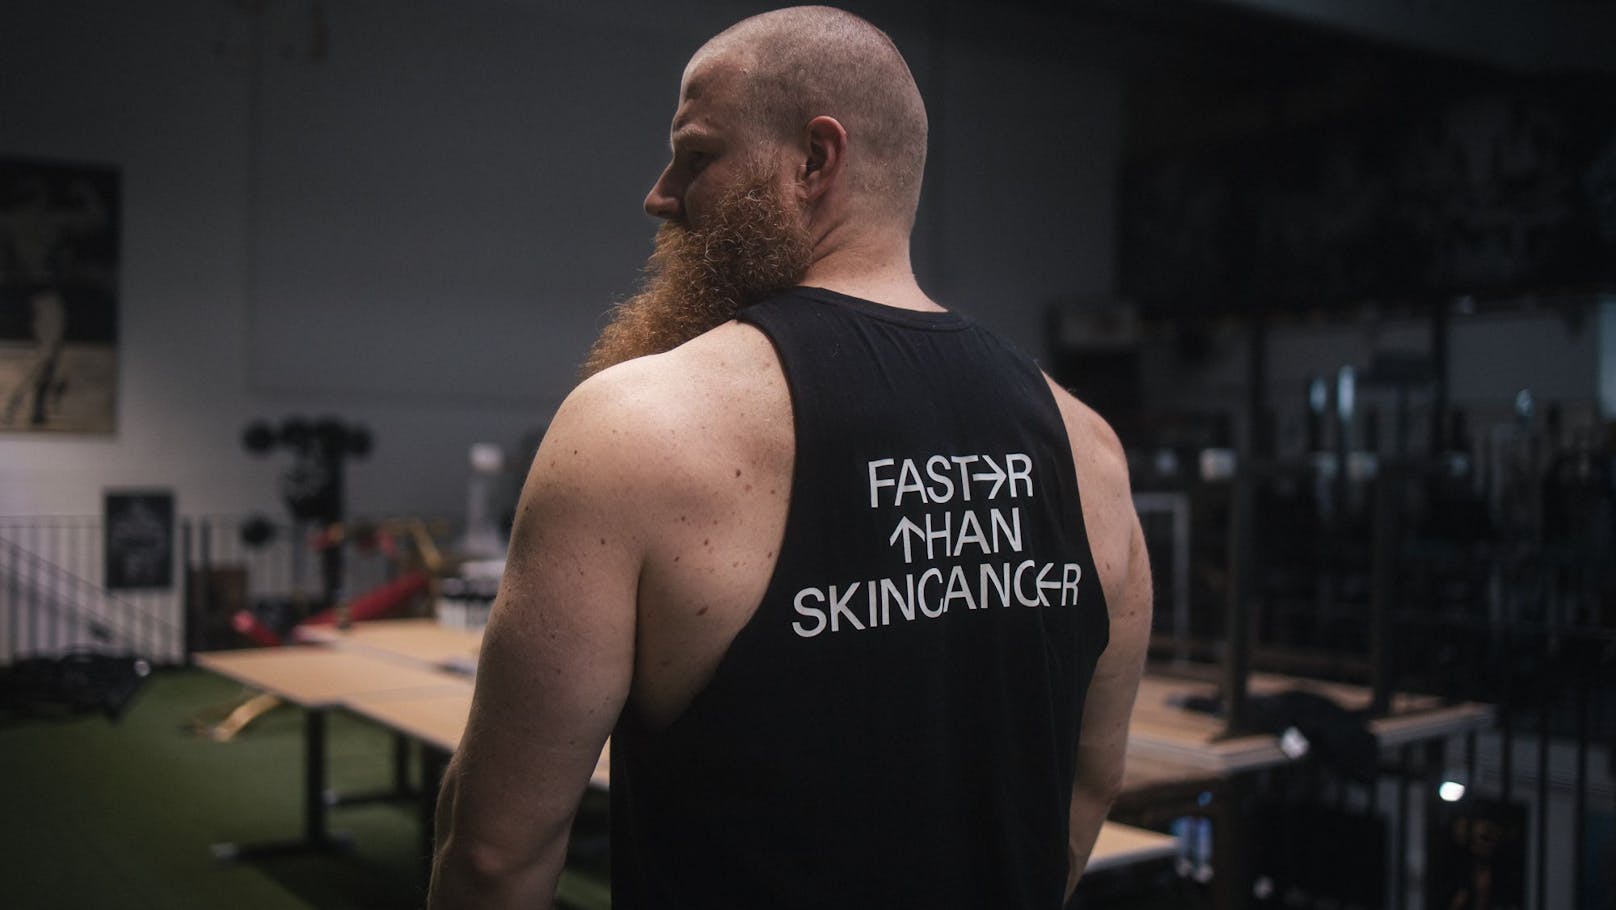 Der Kraftdreikämpfer Alexander Pürzel beteiligt sich an der Aufklärungskampagne "Faster than Skincancer"